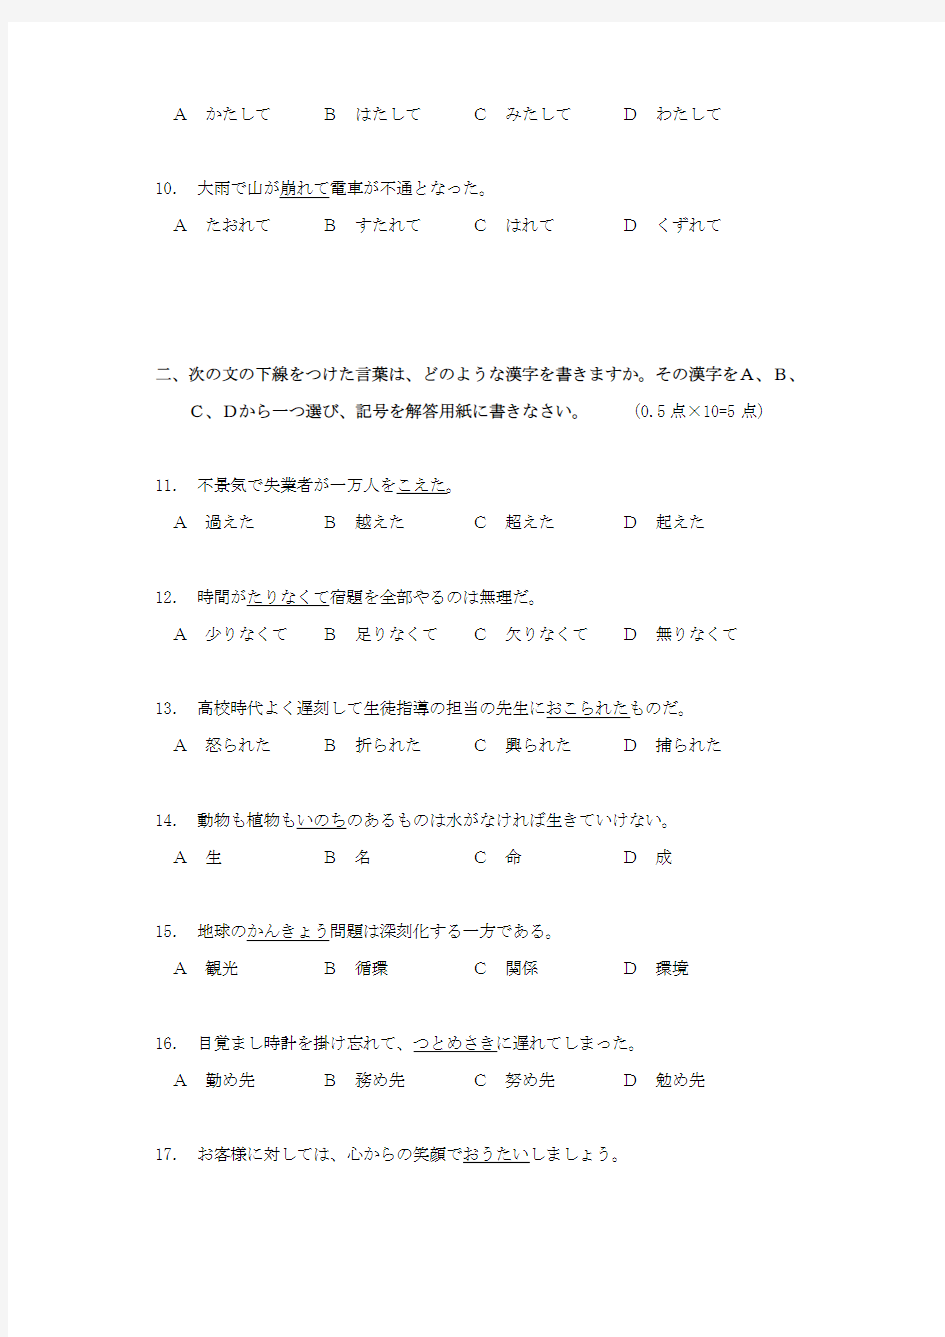 学位日语试题